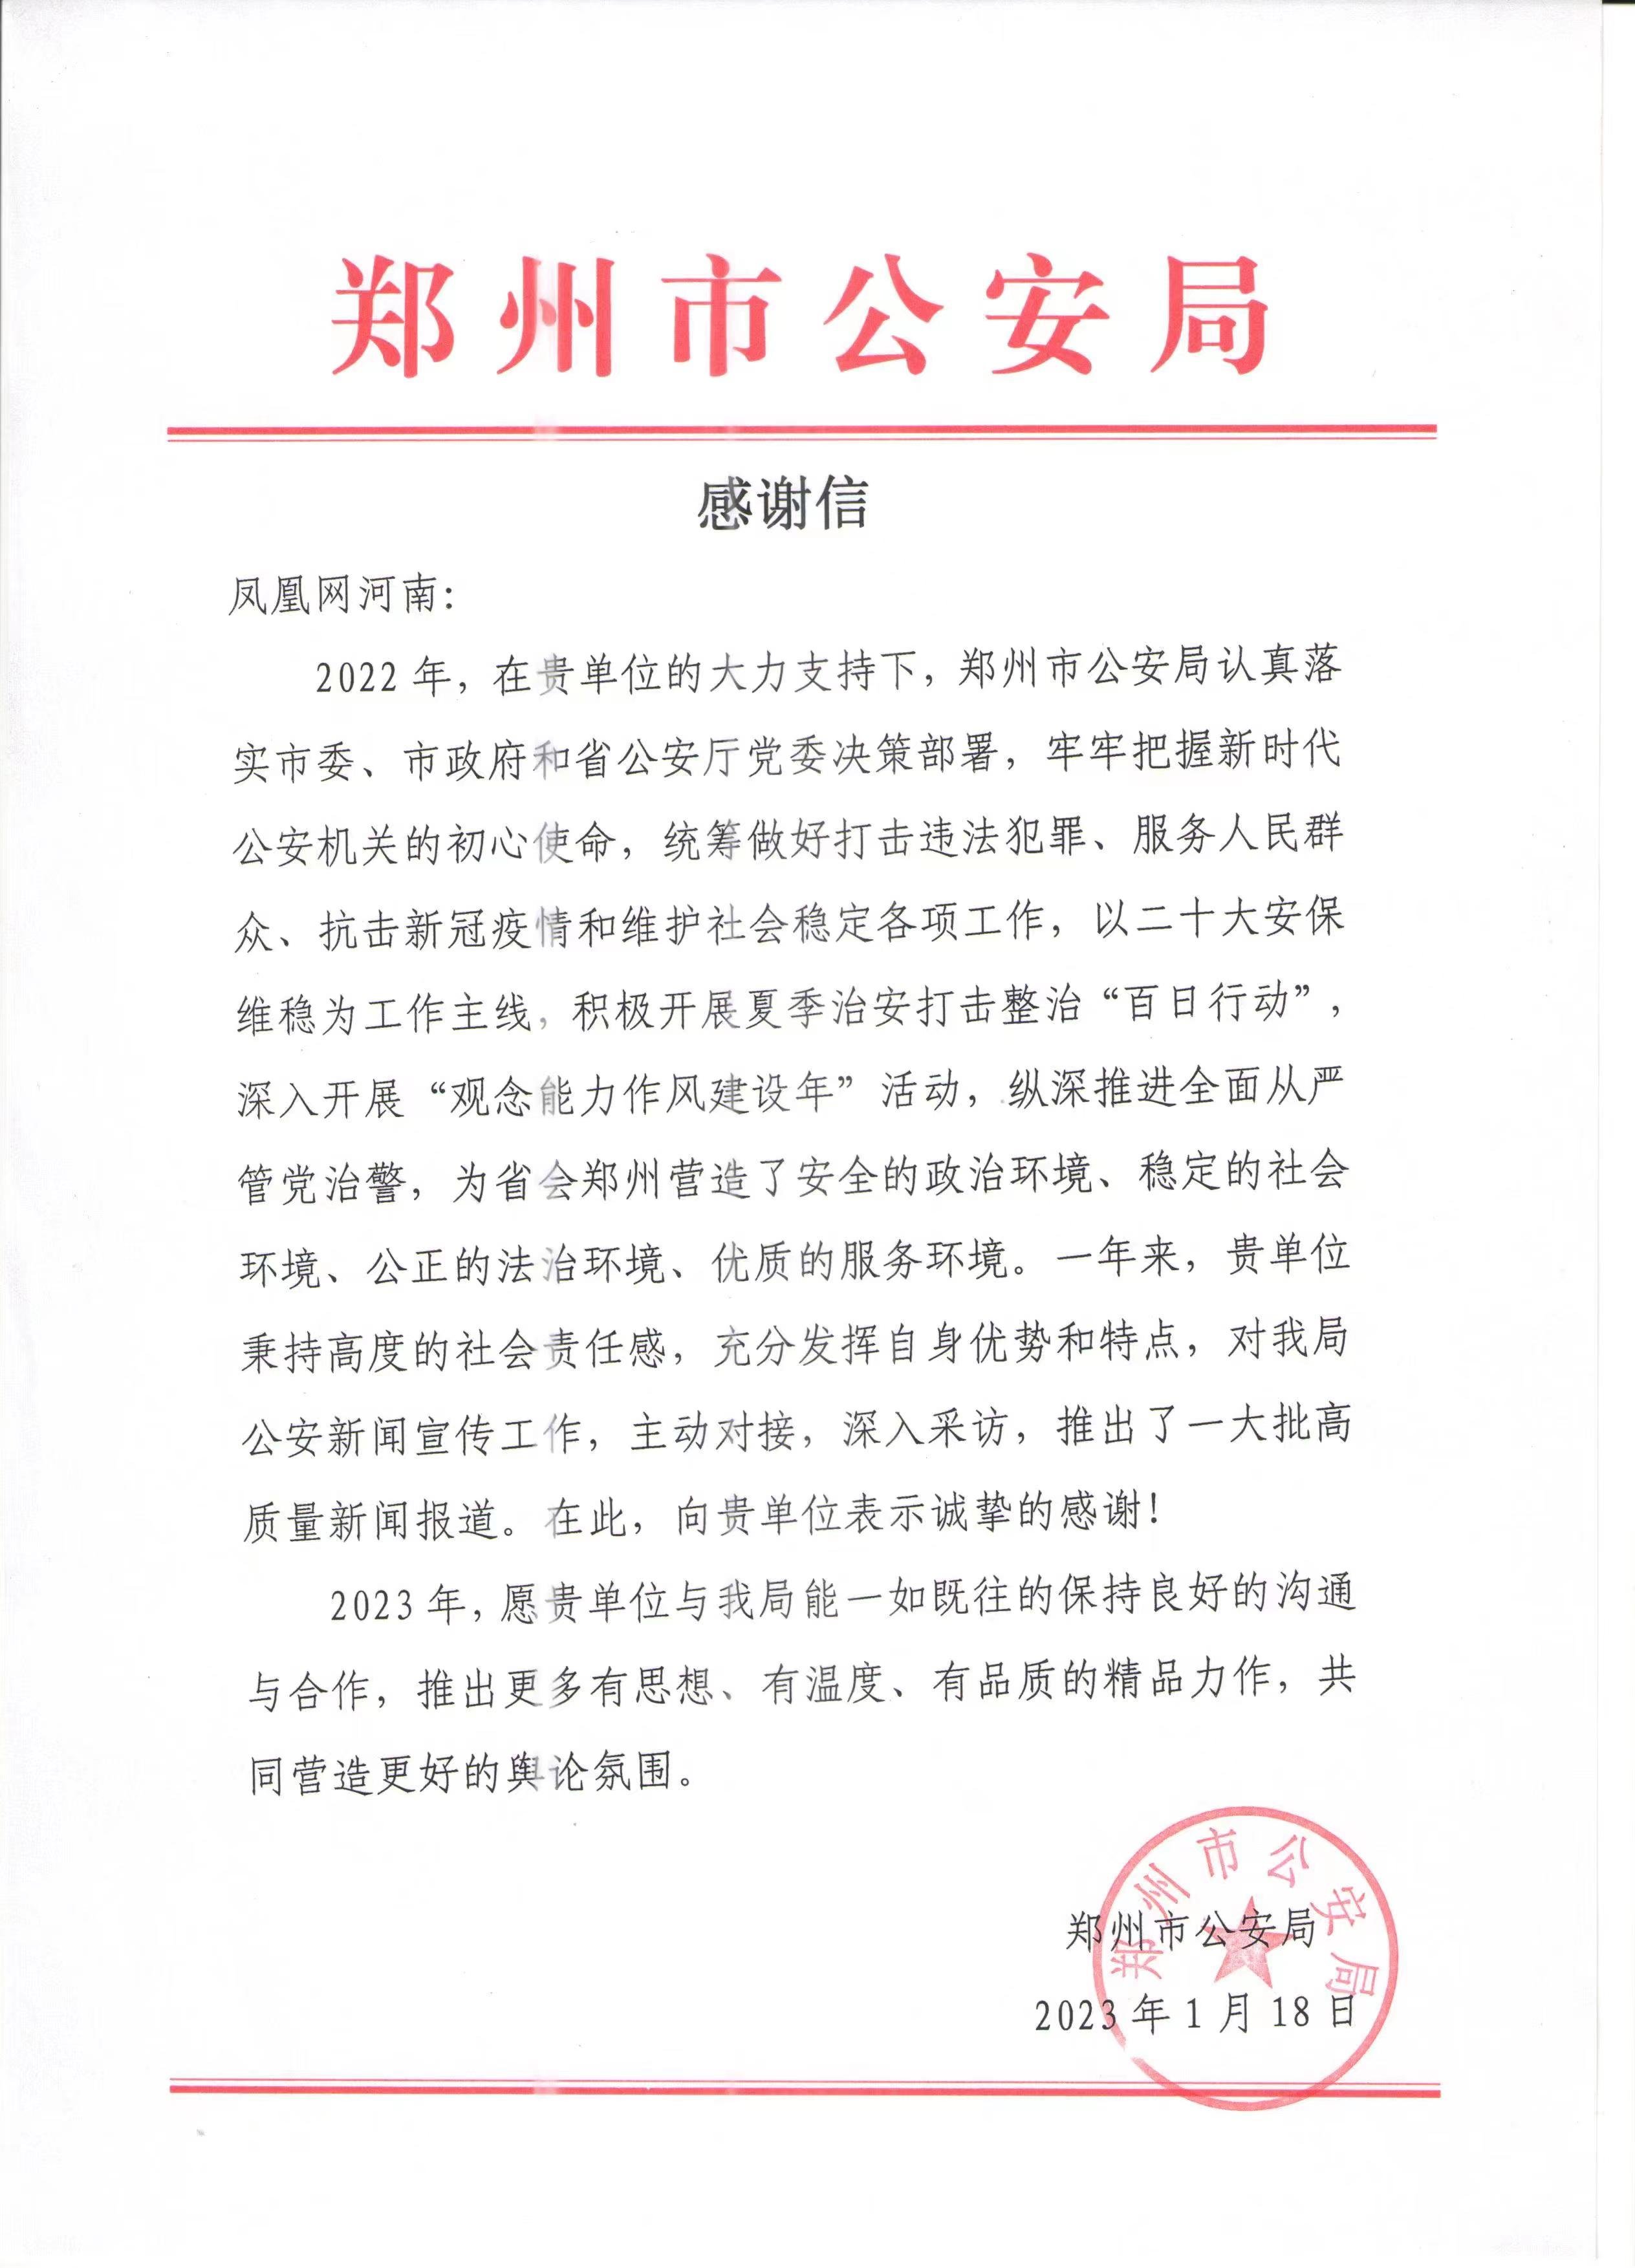 高质量报道获好评 凤凰网河南收到郑州市公安局感谢信